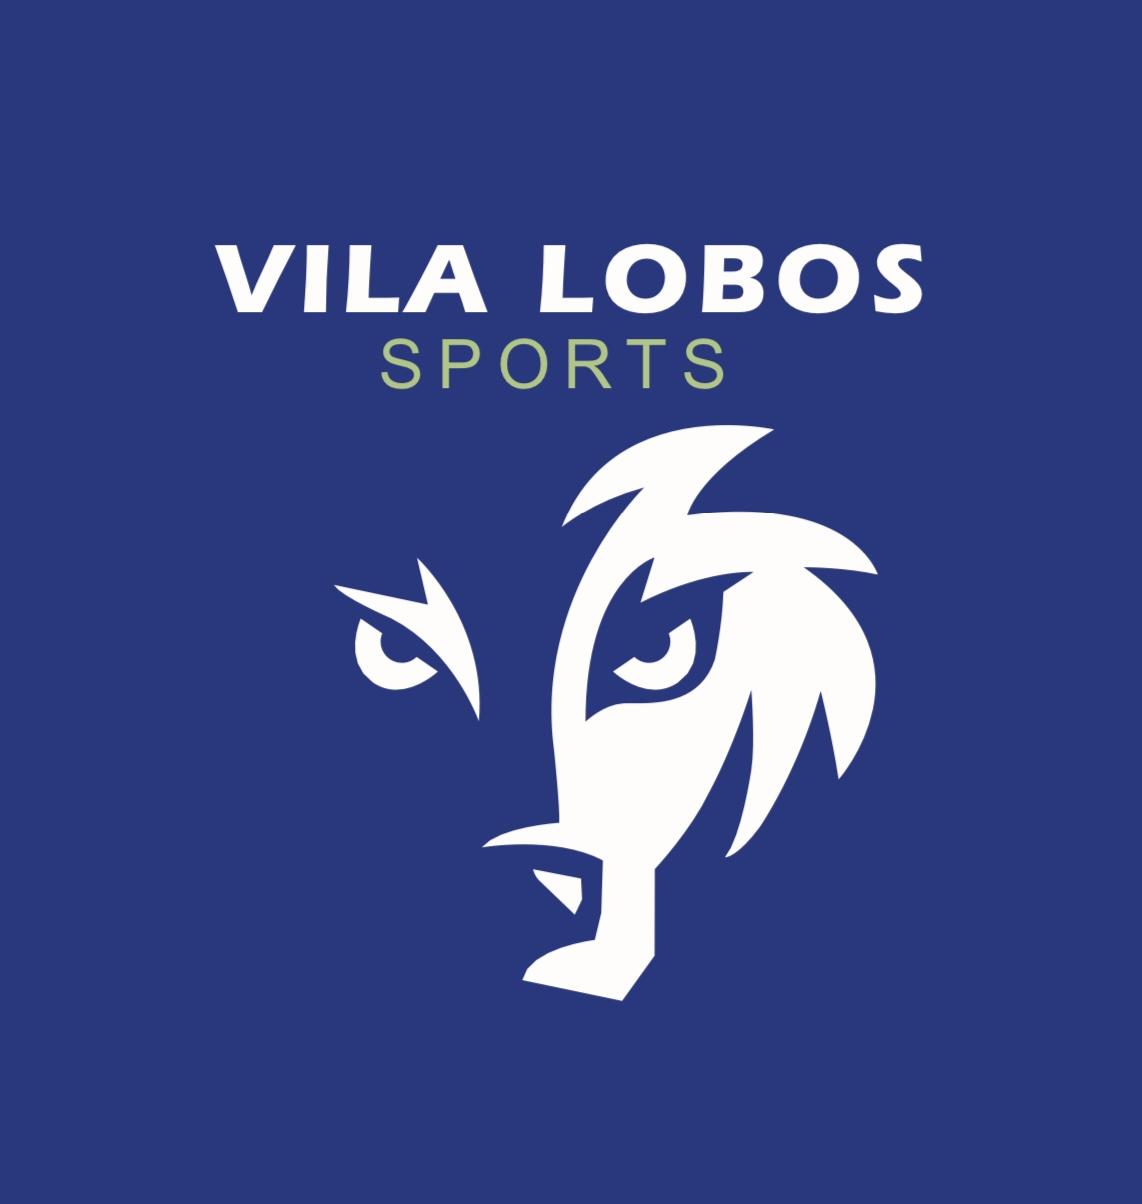 Vila Lobos Sports